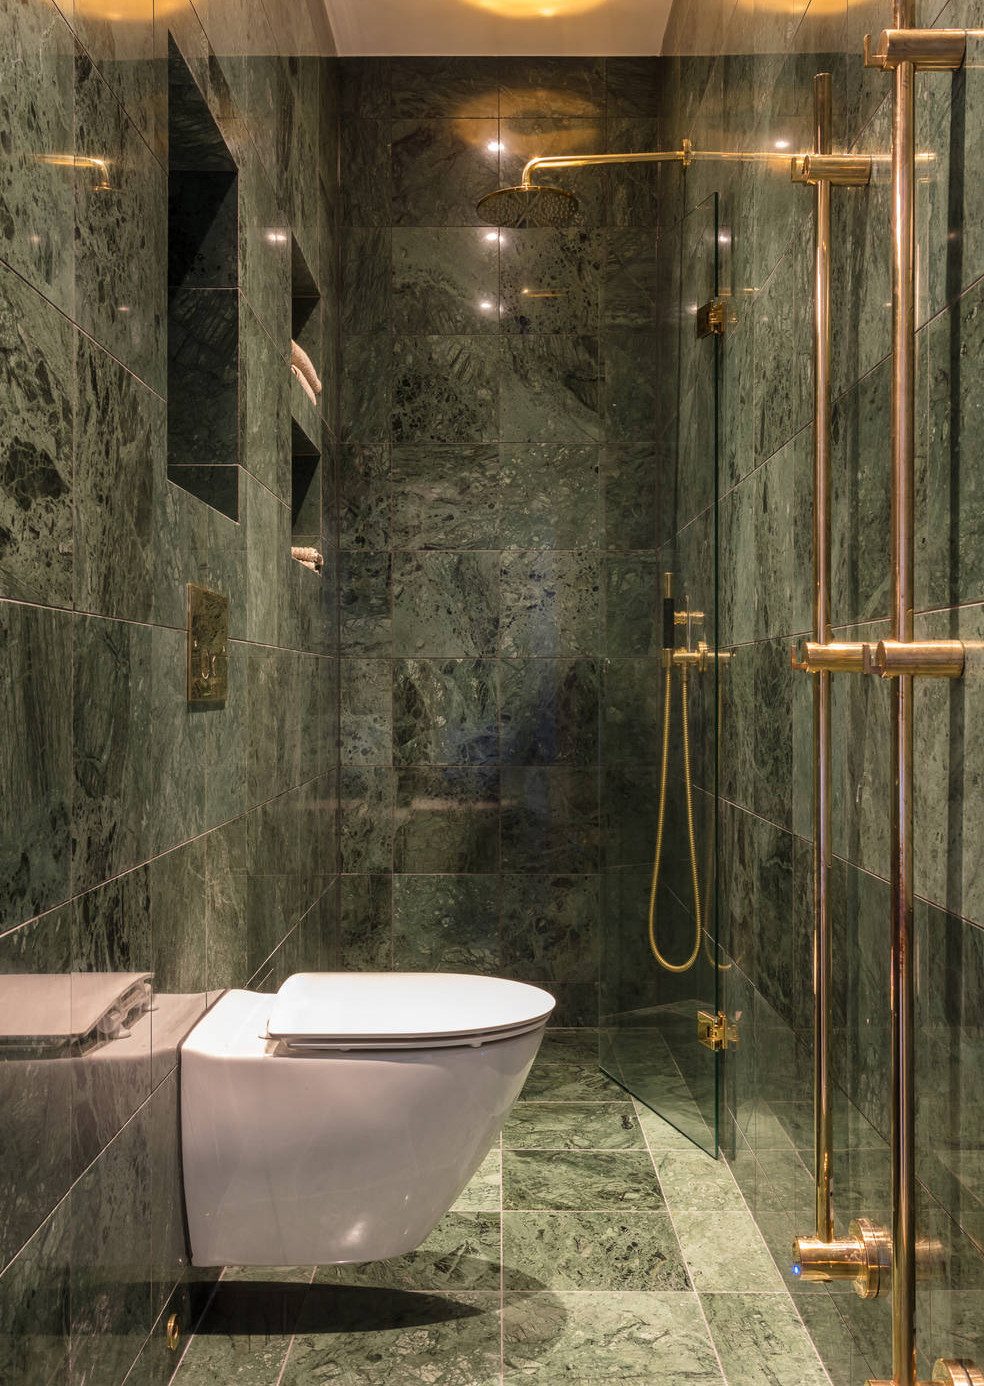 Spiksplinternieuw Kleine smalle badkamer in groen marmer | Inrichting-huis.com ZX-48